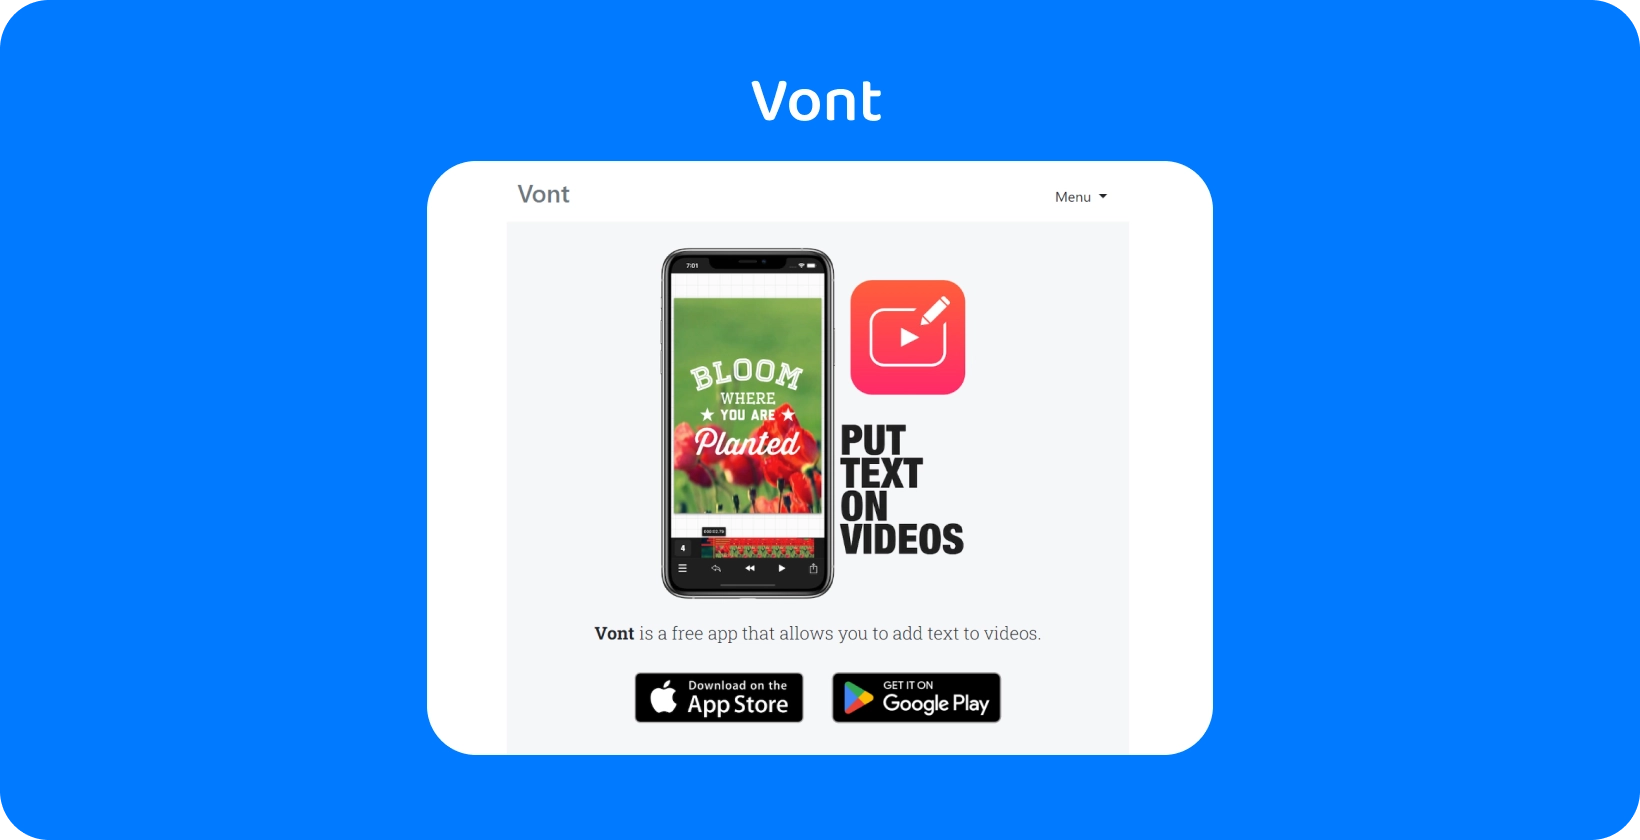 Pametni telefon koji Vont interfejs aplikacije, ističući njegovu funkciju za dodavanje teksta na video zapise, dostupne na App Store i Google Play